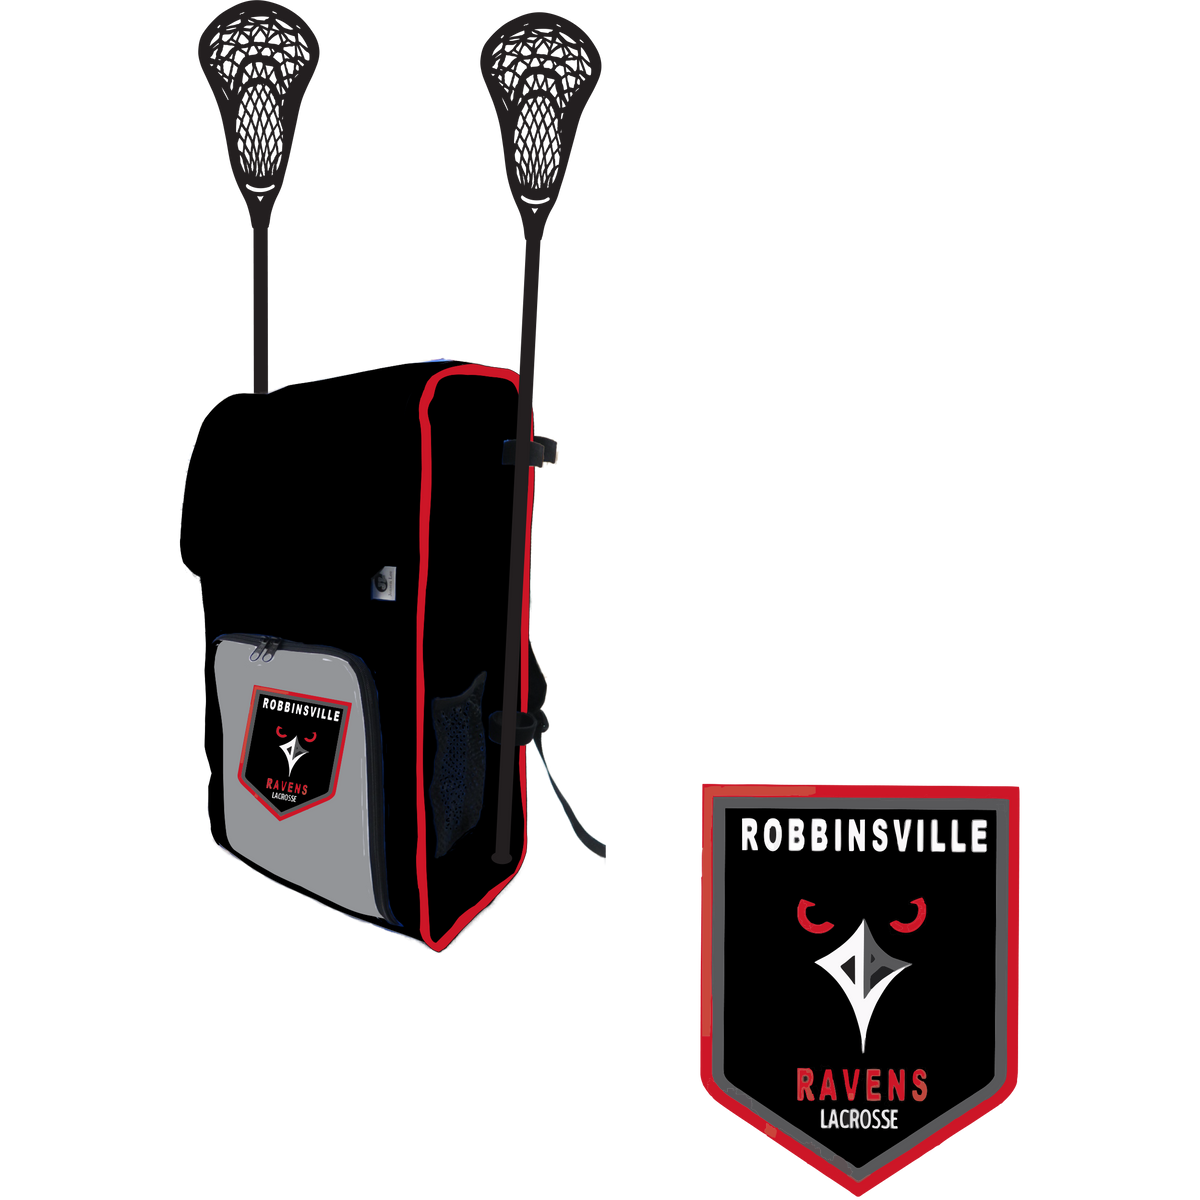 Robbinsville Lacrosse Association Side Stick Holder Large Backpack